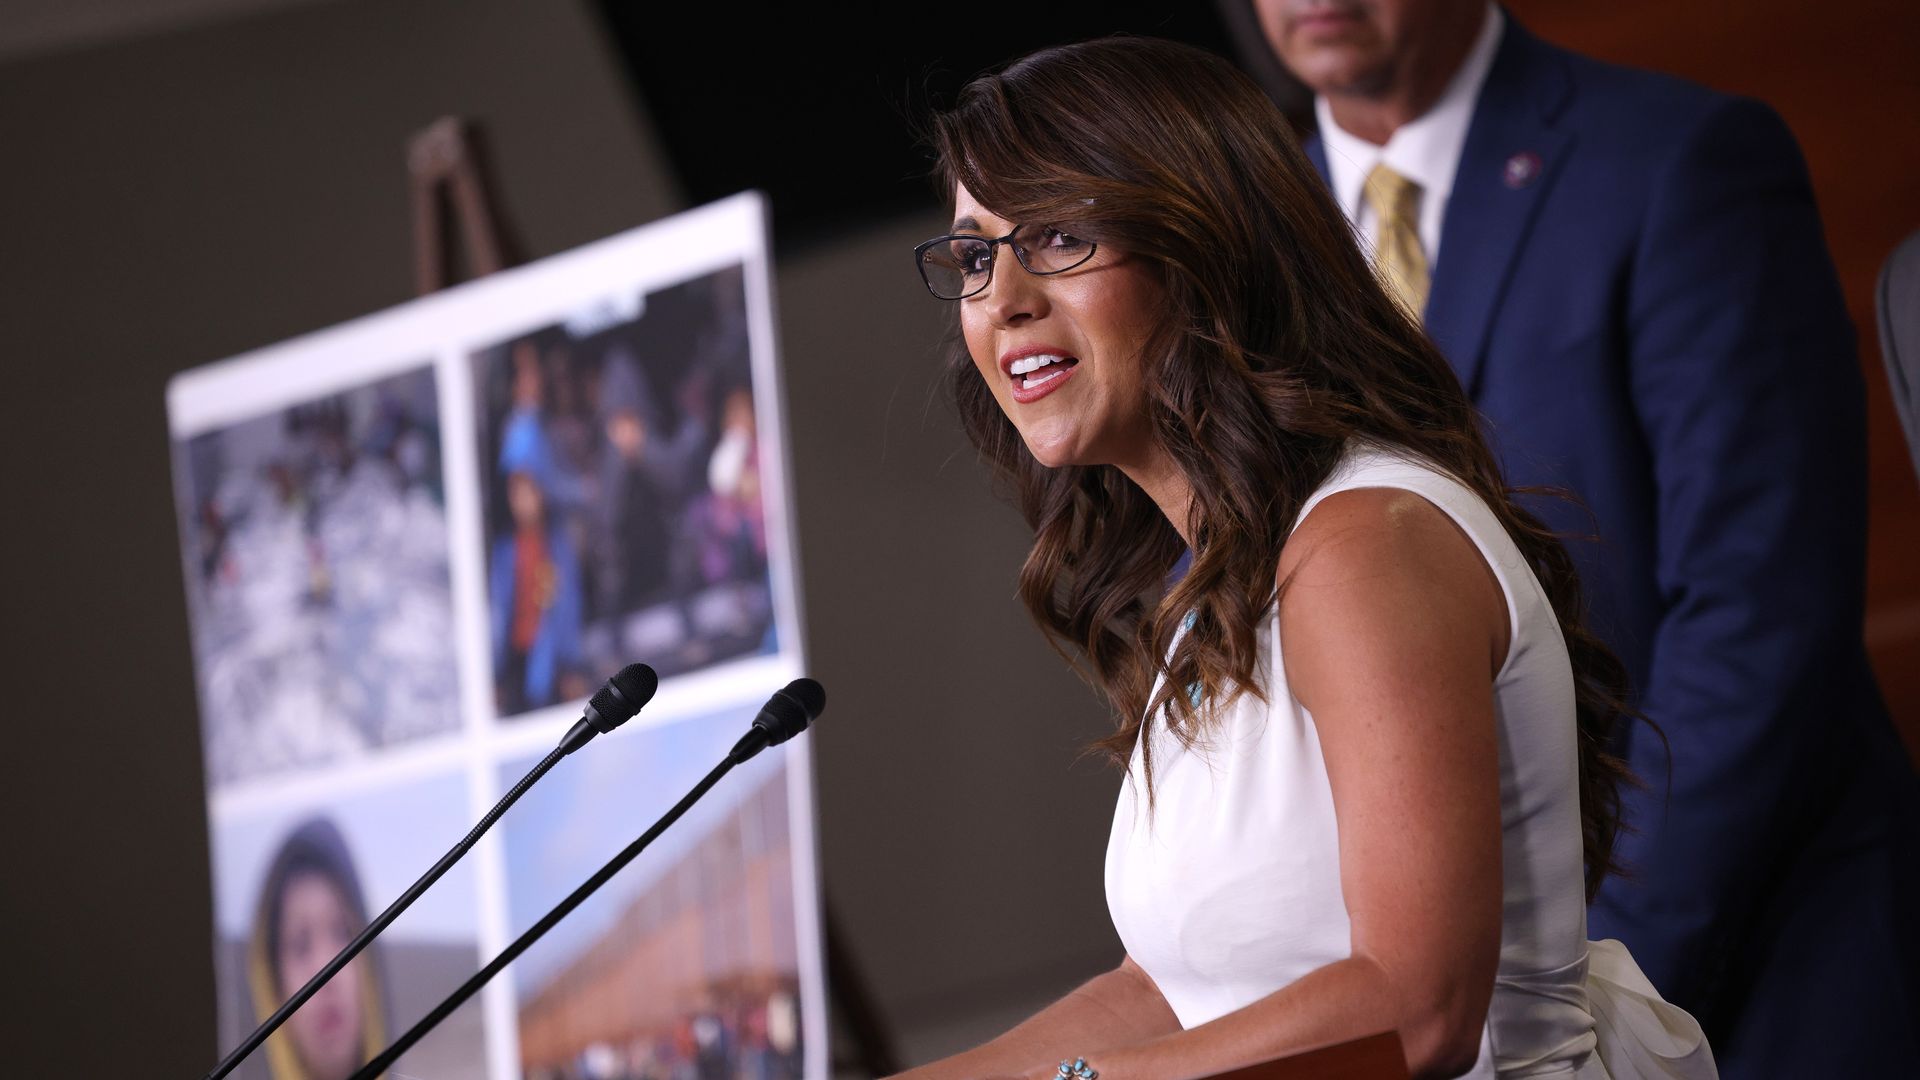 Picture of Rep. Lauren Boebert speaking behind a podium